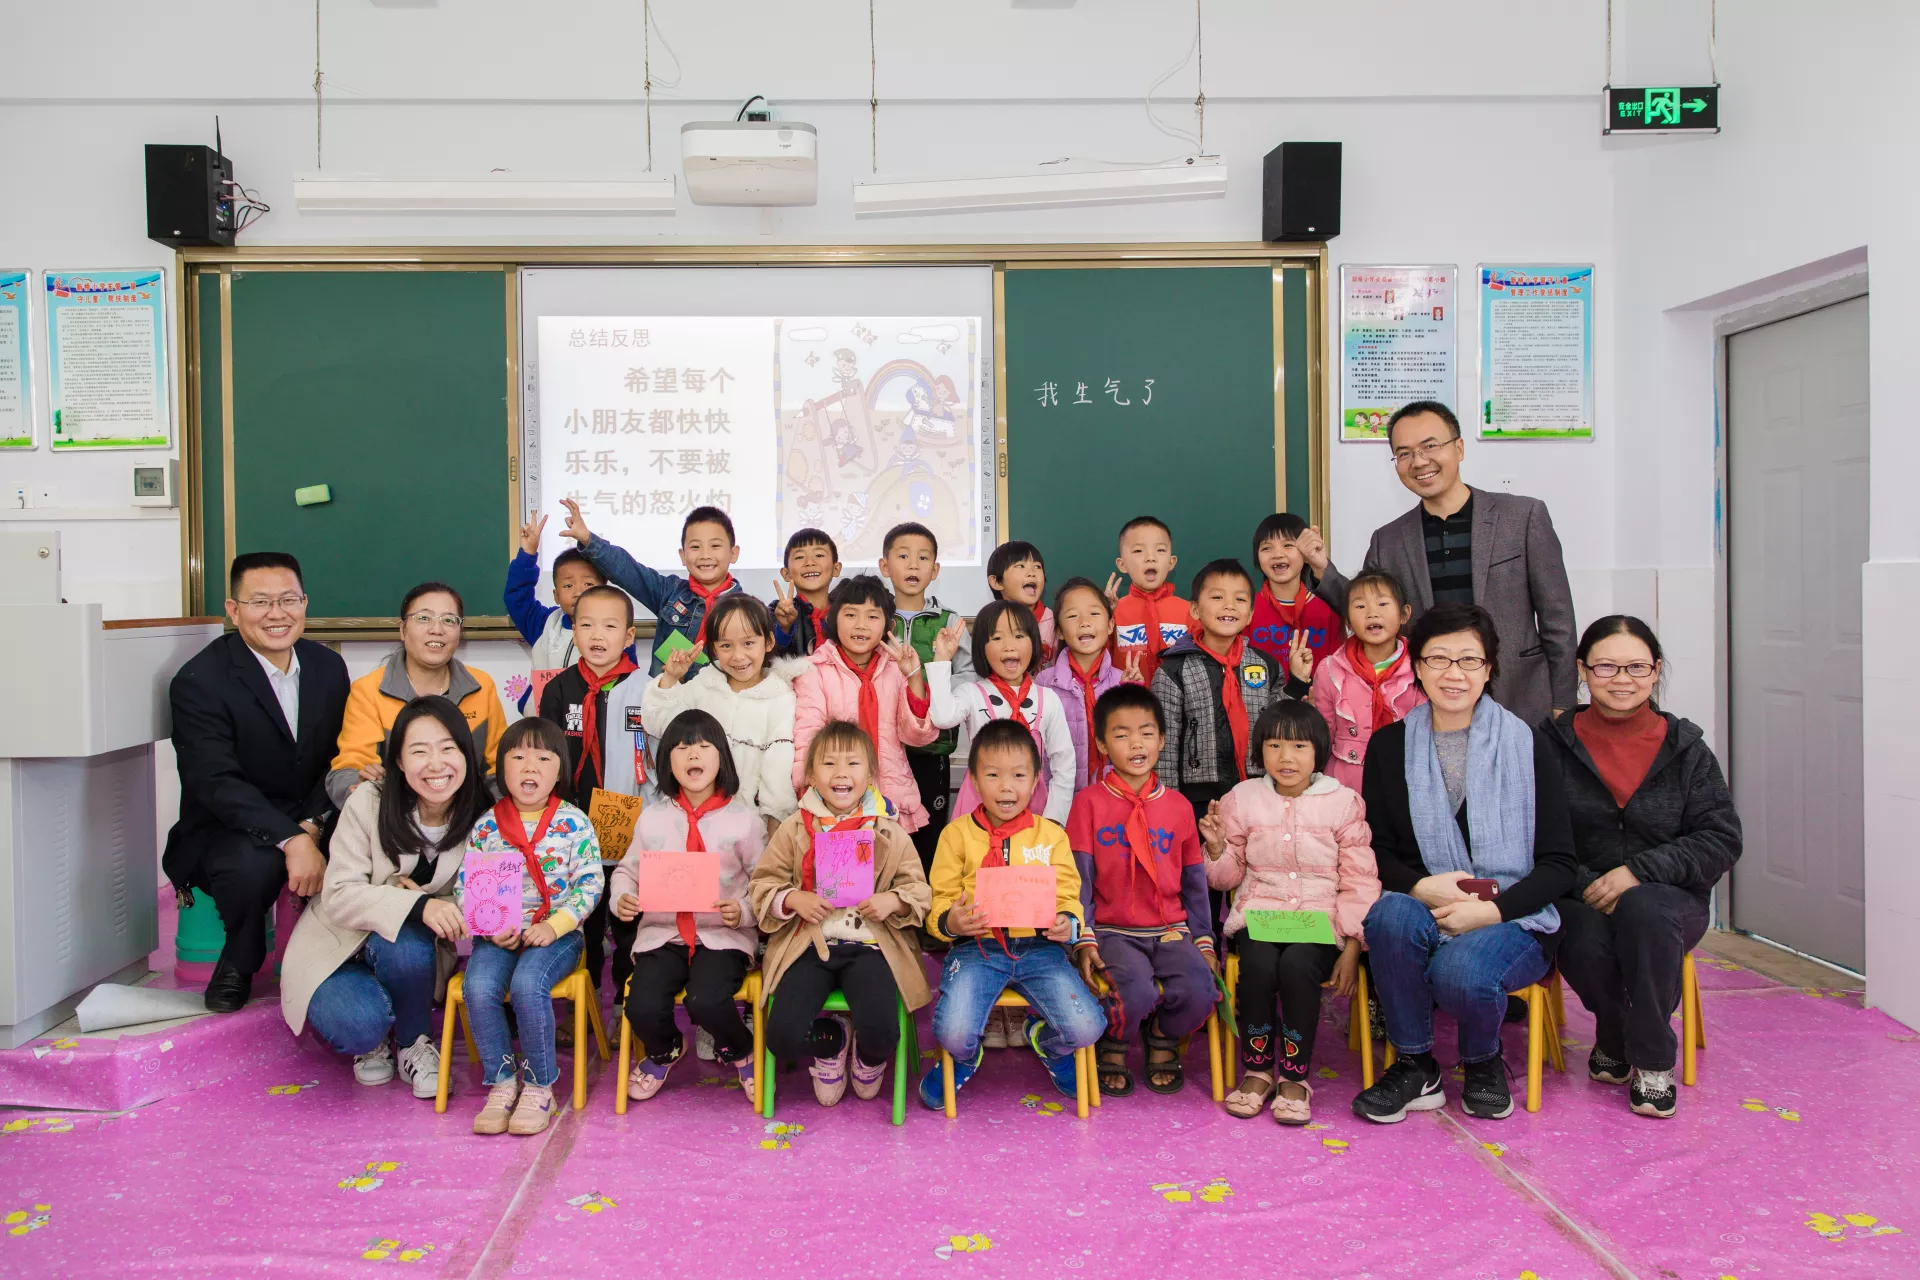 本文作者王超（前排左一）与项目学校的老师和孩子们合影。